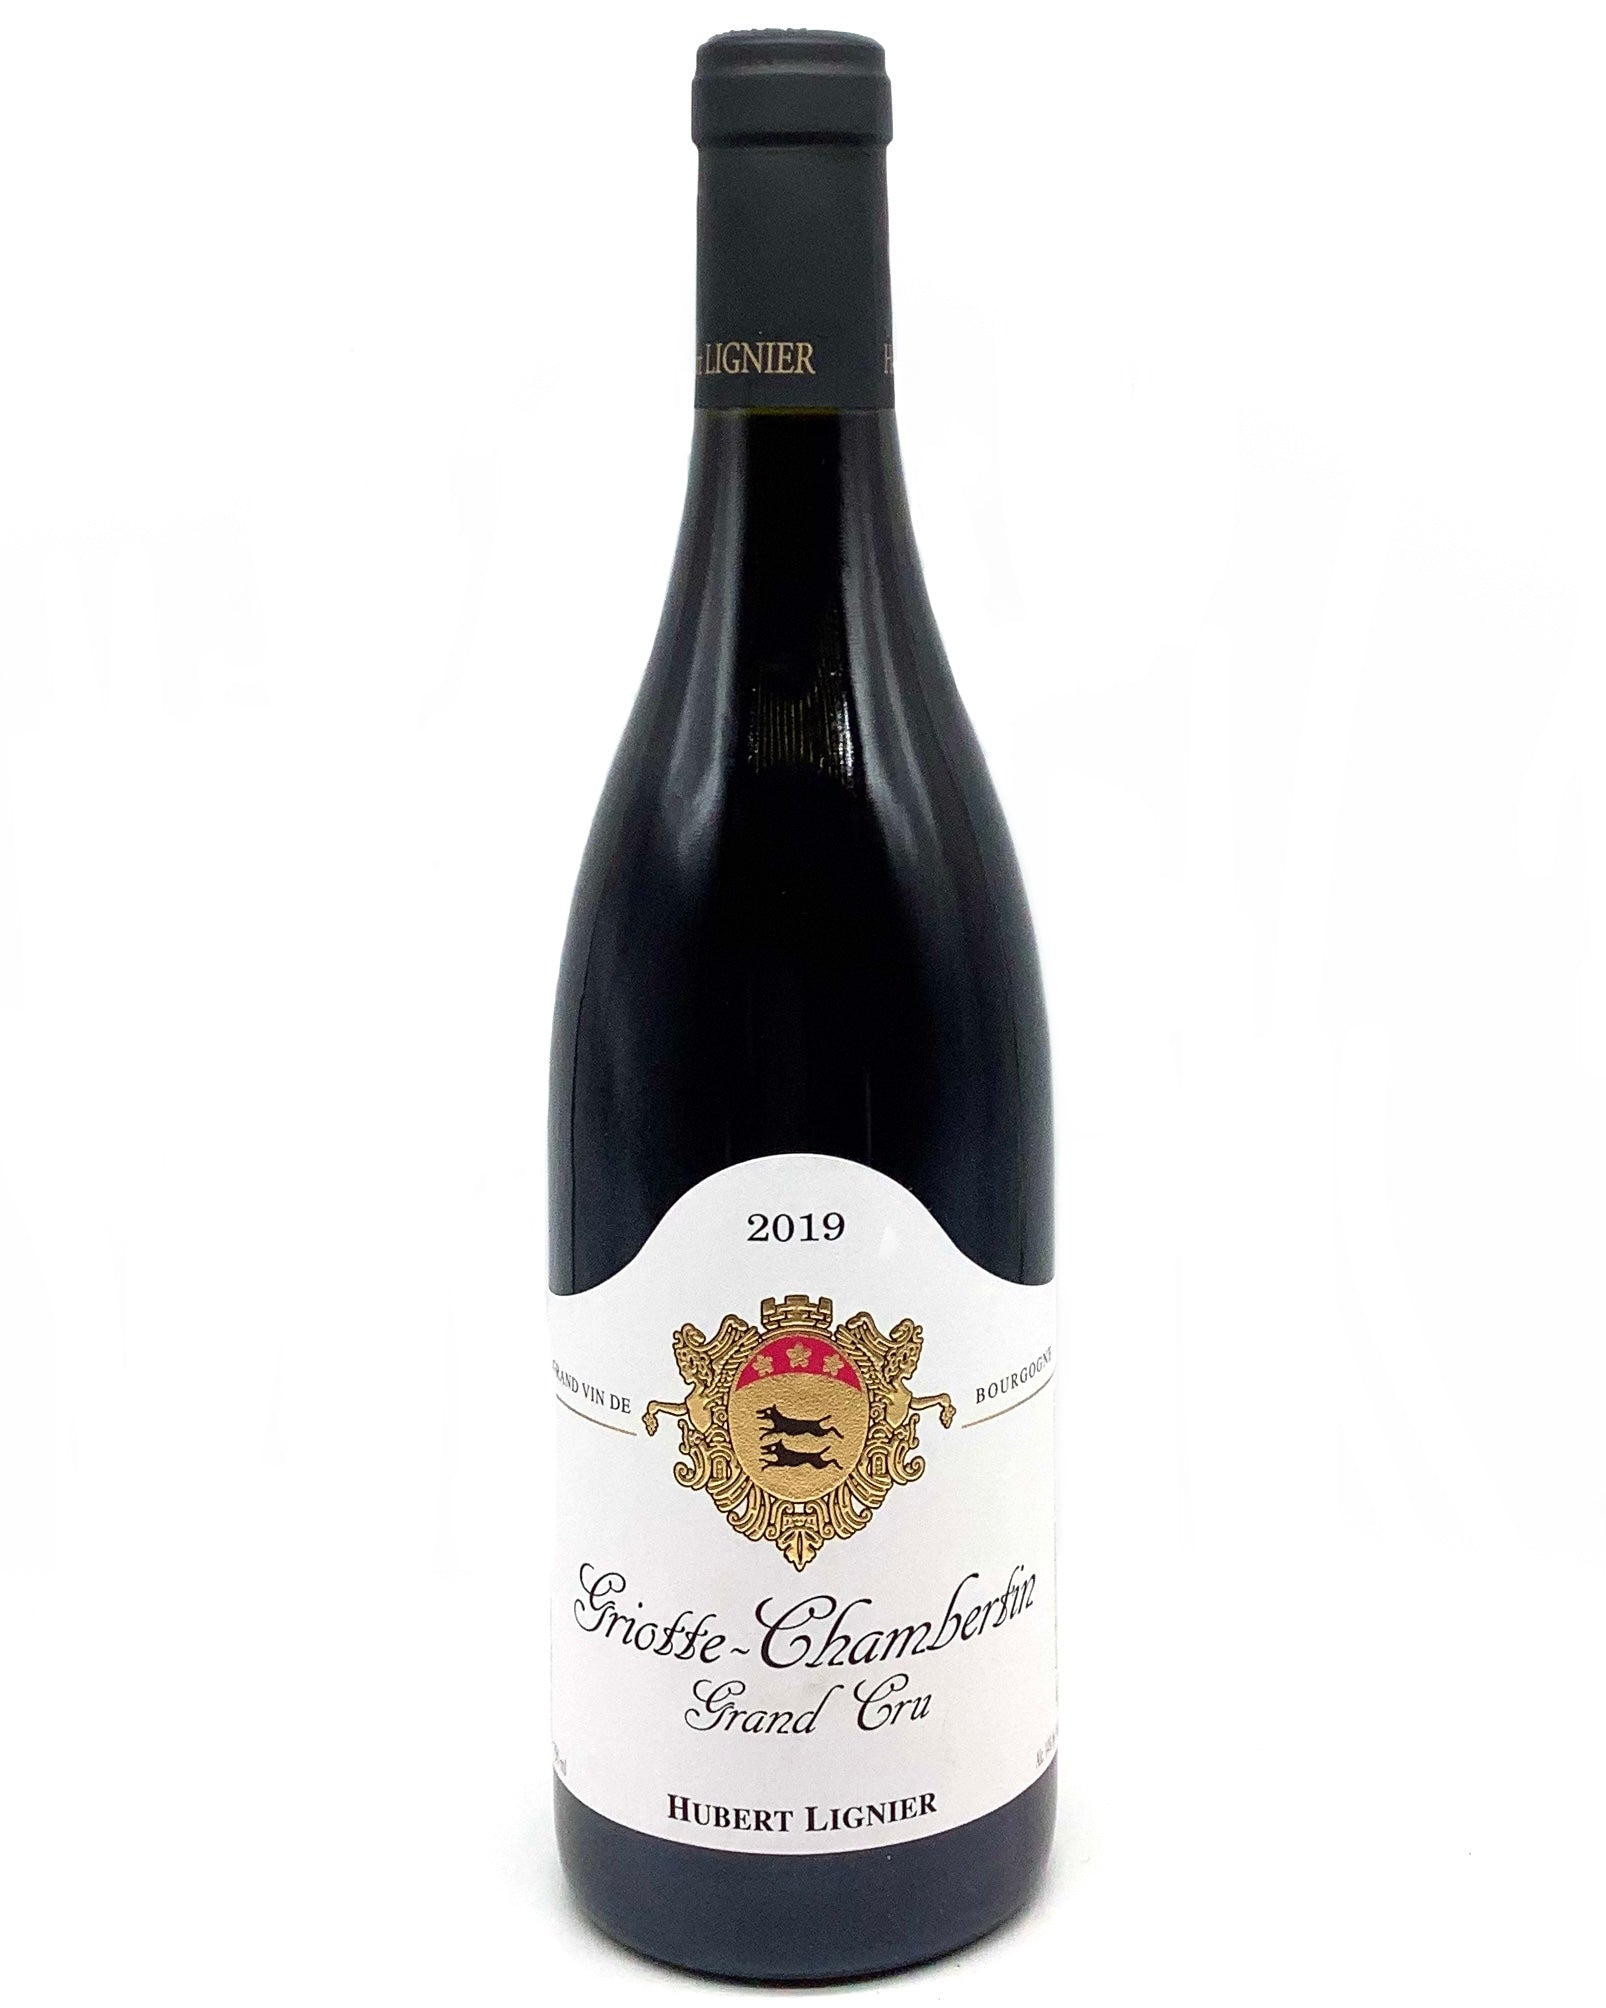 Domaine Hubert Lignier, Pinot Noir, Griotte-Chambertin Grand Cru, Gevrey-Chambertin, Côte de Nuits, Burgundy, France 2019